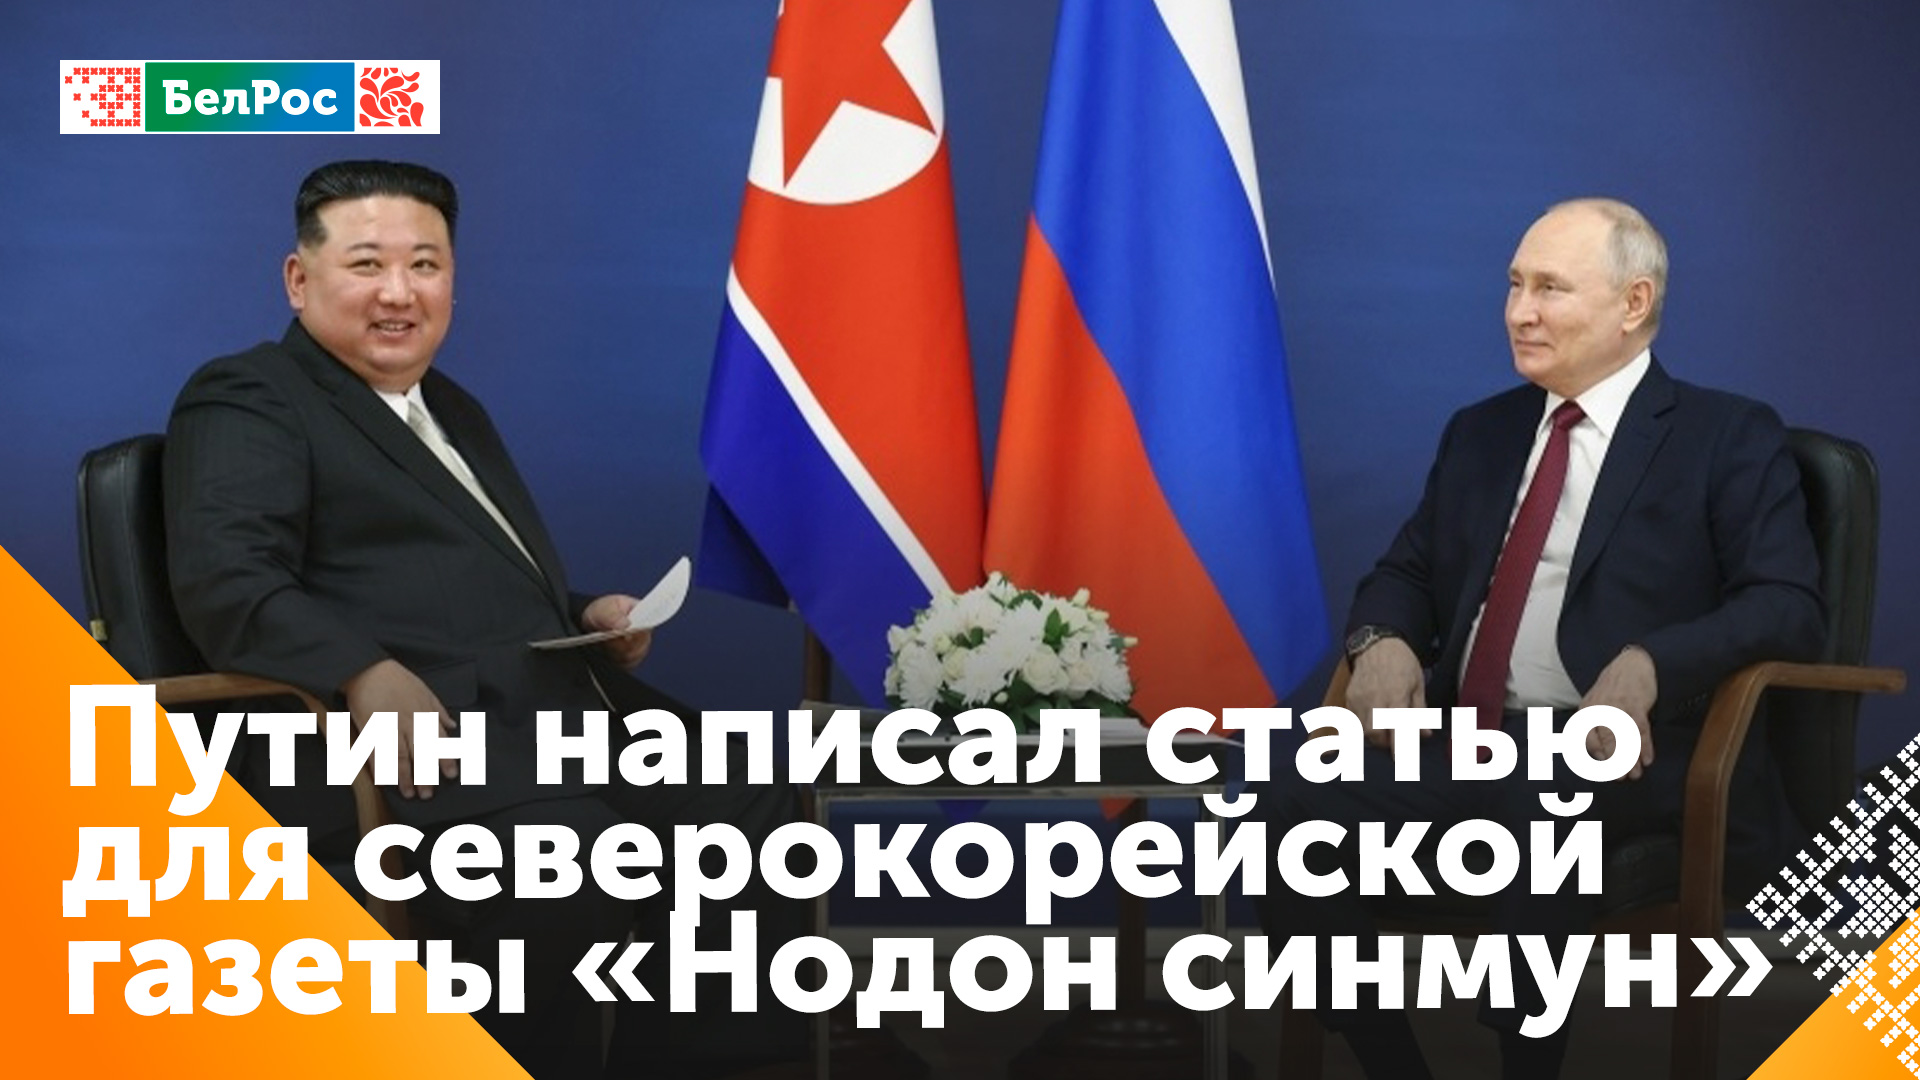 Путин: Россия готова развивать с КНДР неподконтрольные Западу механизмы торговли и взаимных расчётов